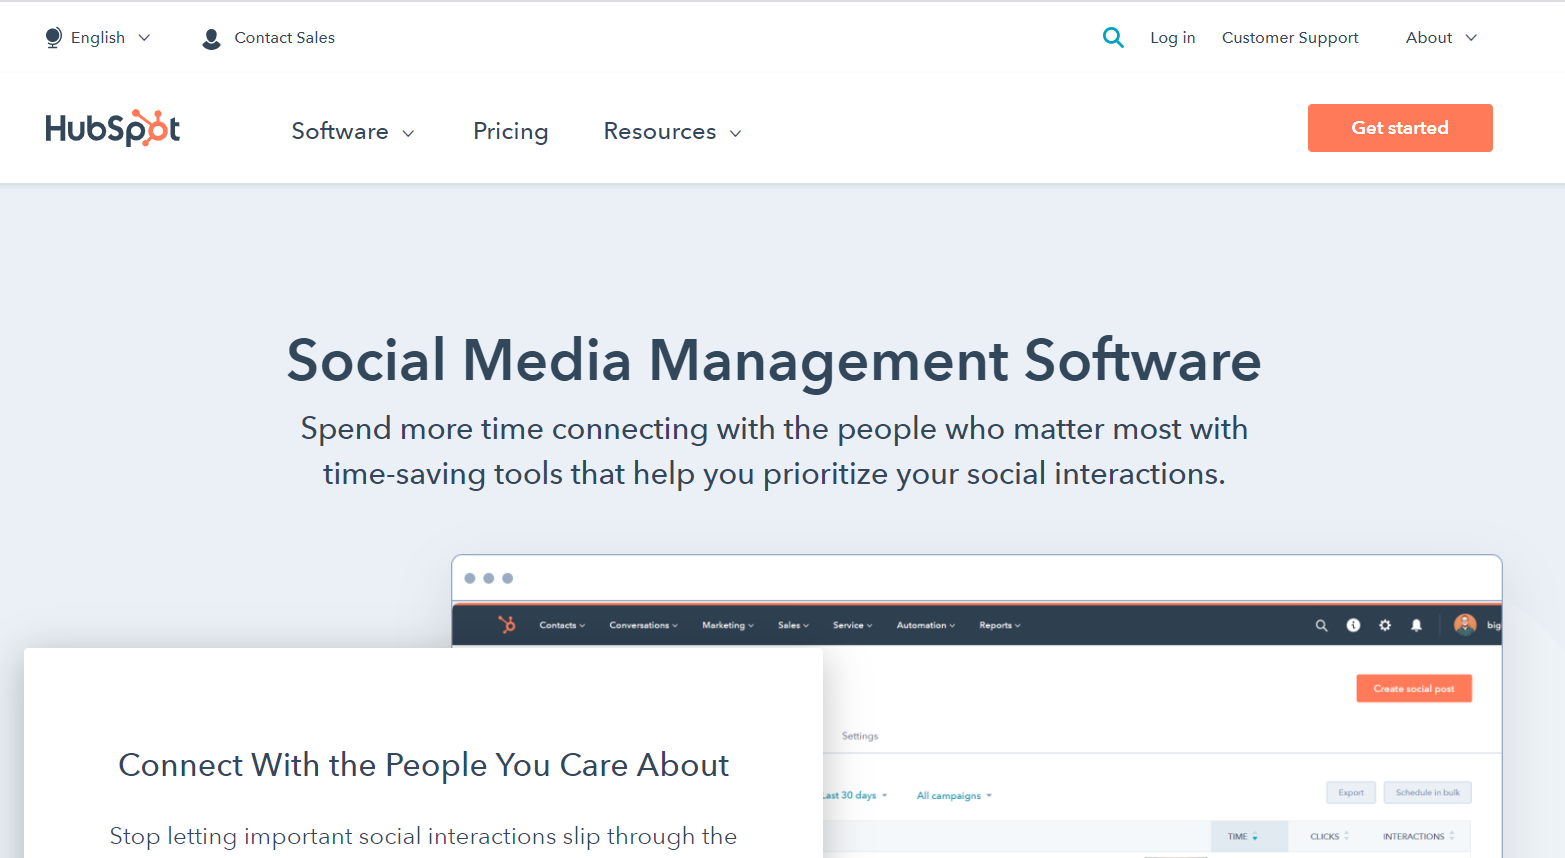 HubSpot-social-media-marketing-tools 